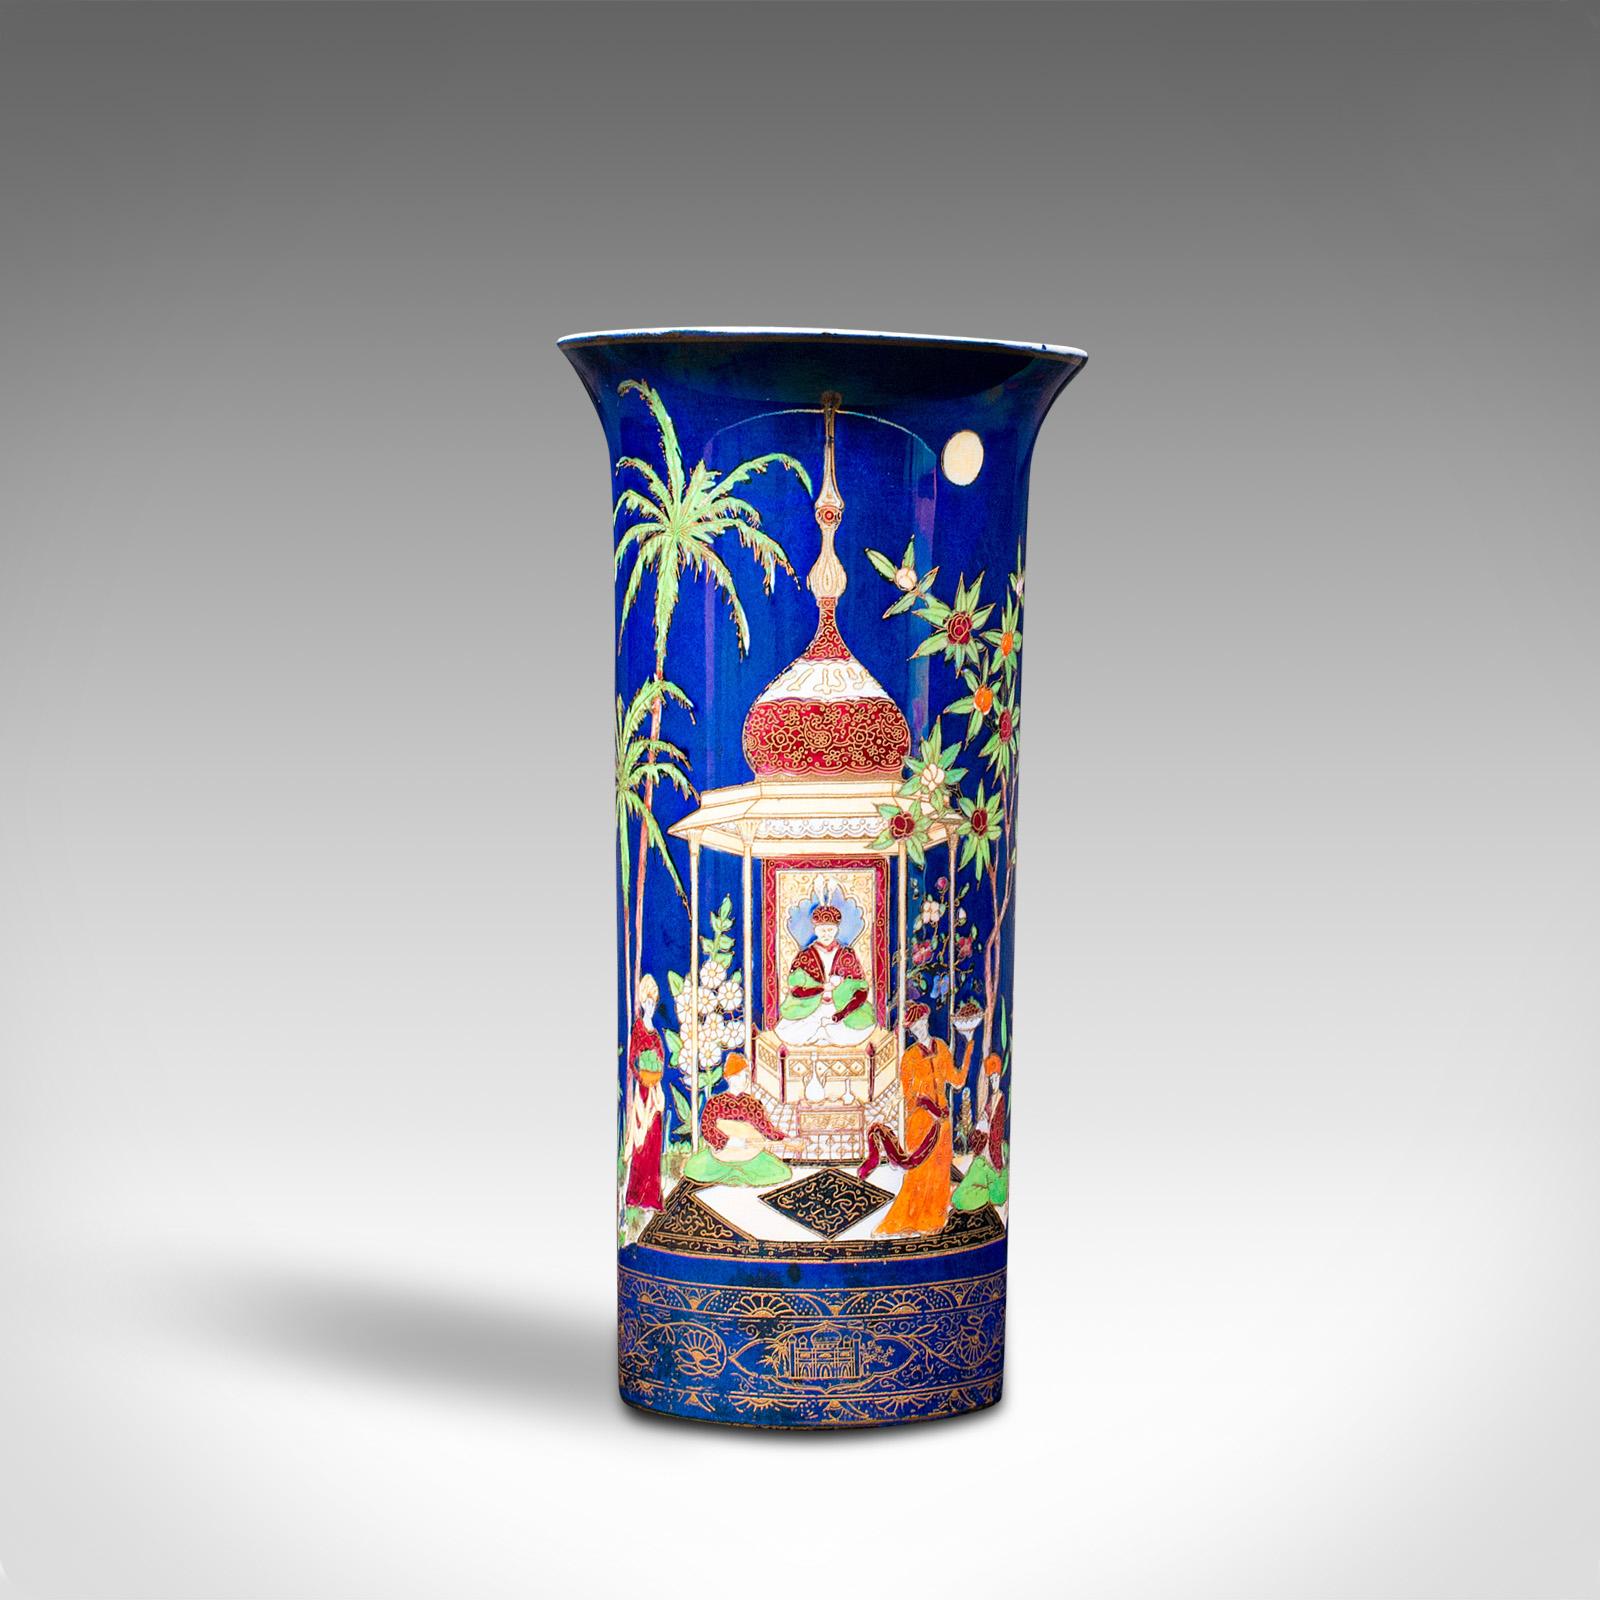 Il s'agit d'un vase décoratif ancien. Un pot à fleurs anglais, en céramique et finition lustrée, datant du début du 20e siècle, vers 1920.

Couleur frappante et attrait distinctif du motif persan de Carlton Ware
Patine d'ancienneté souhaitable et